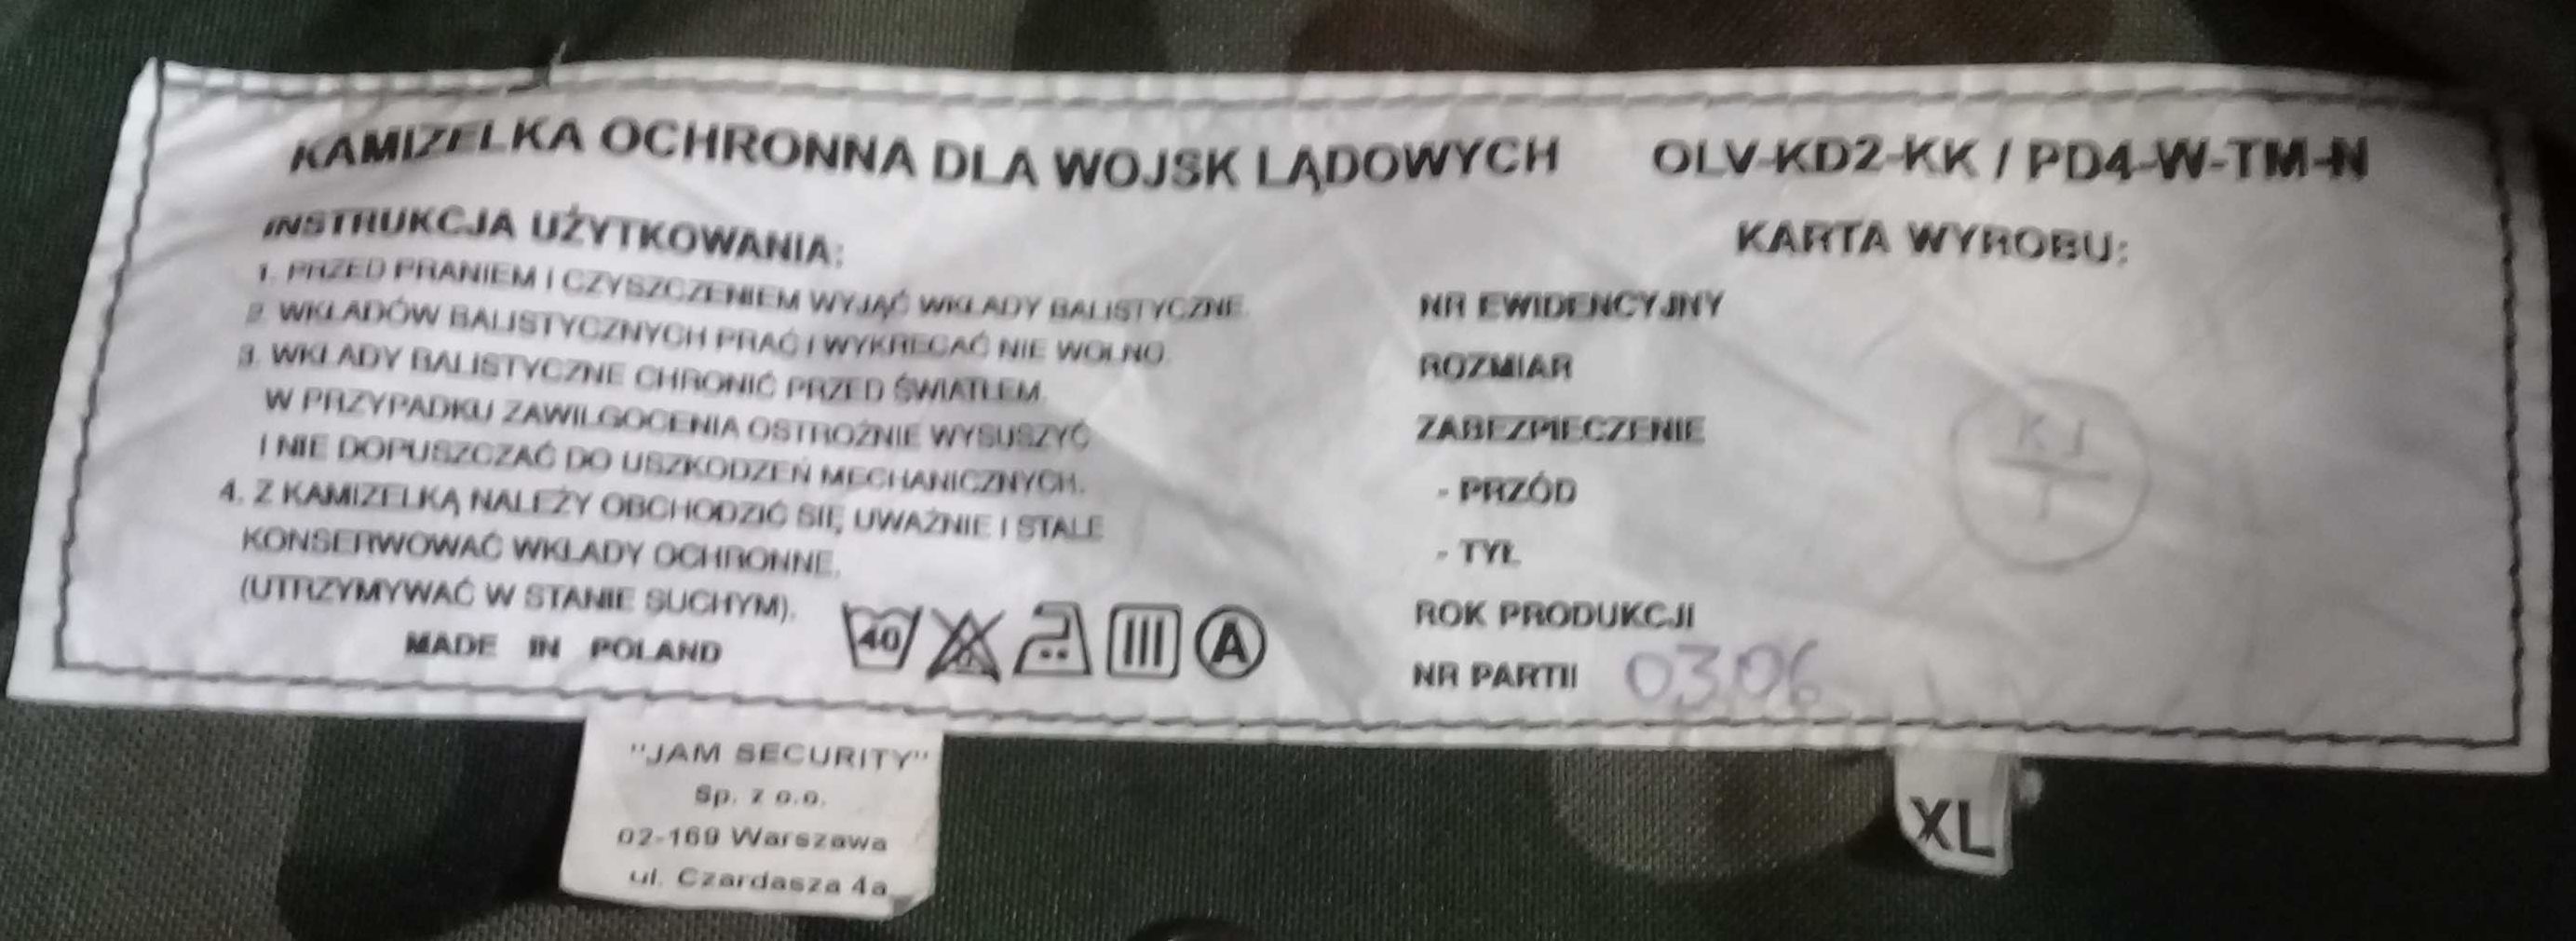 Нова плитоноска OLV-PANTERA XL розм. OLV-KD2-KK/PD4-W-TM-N Польща